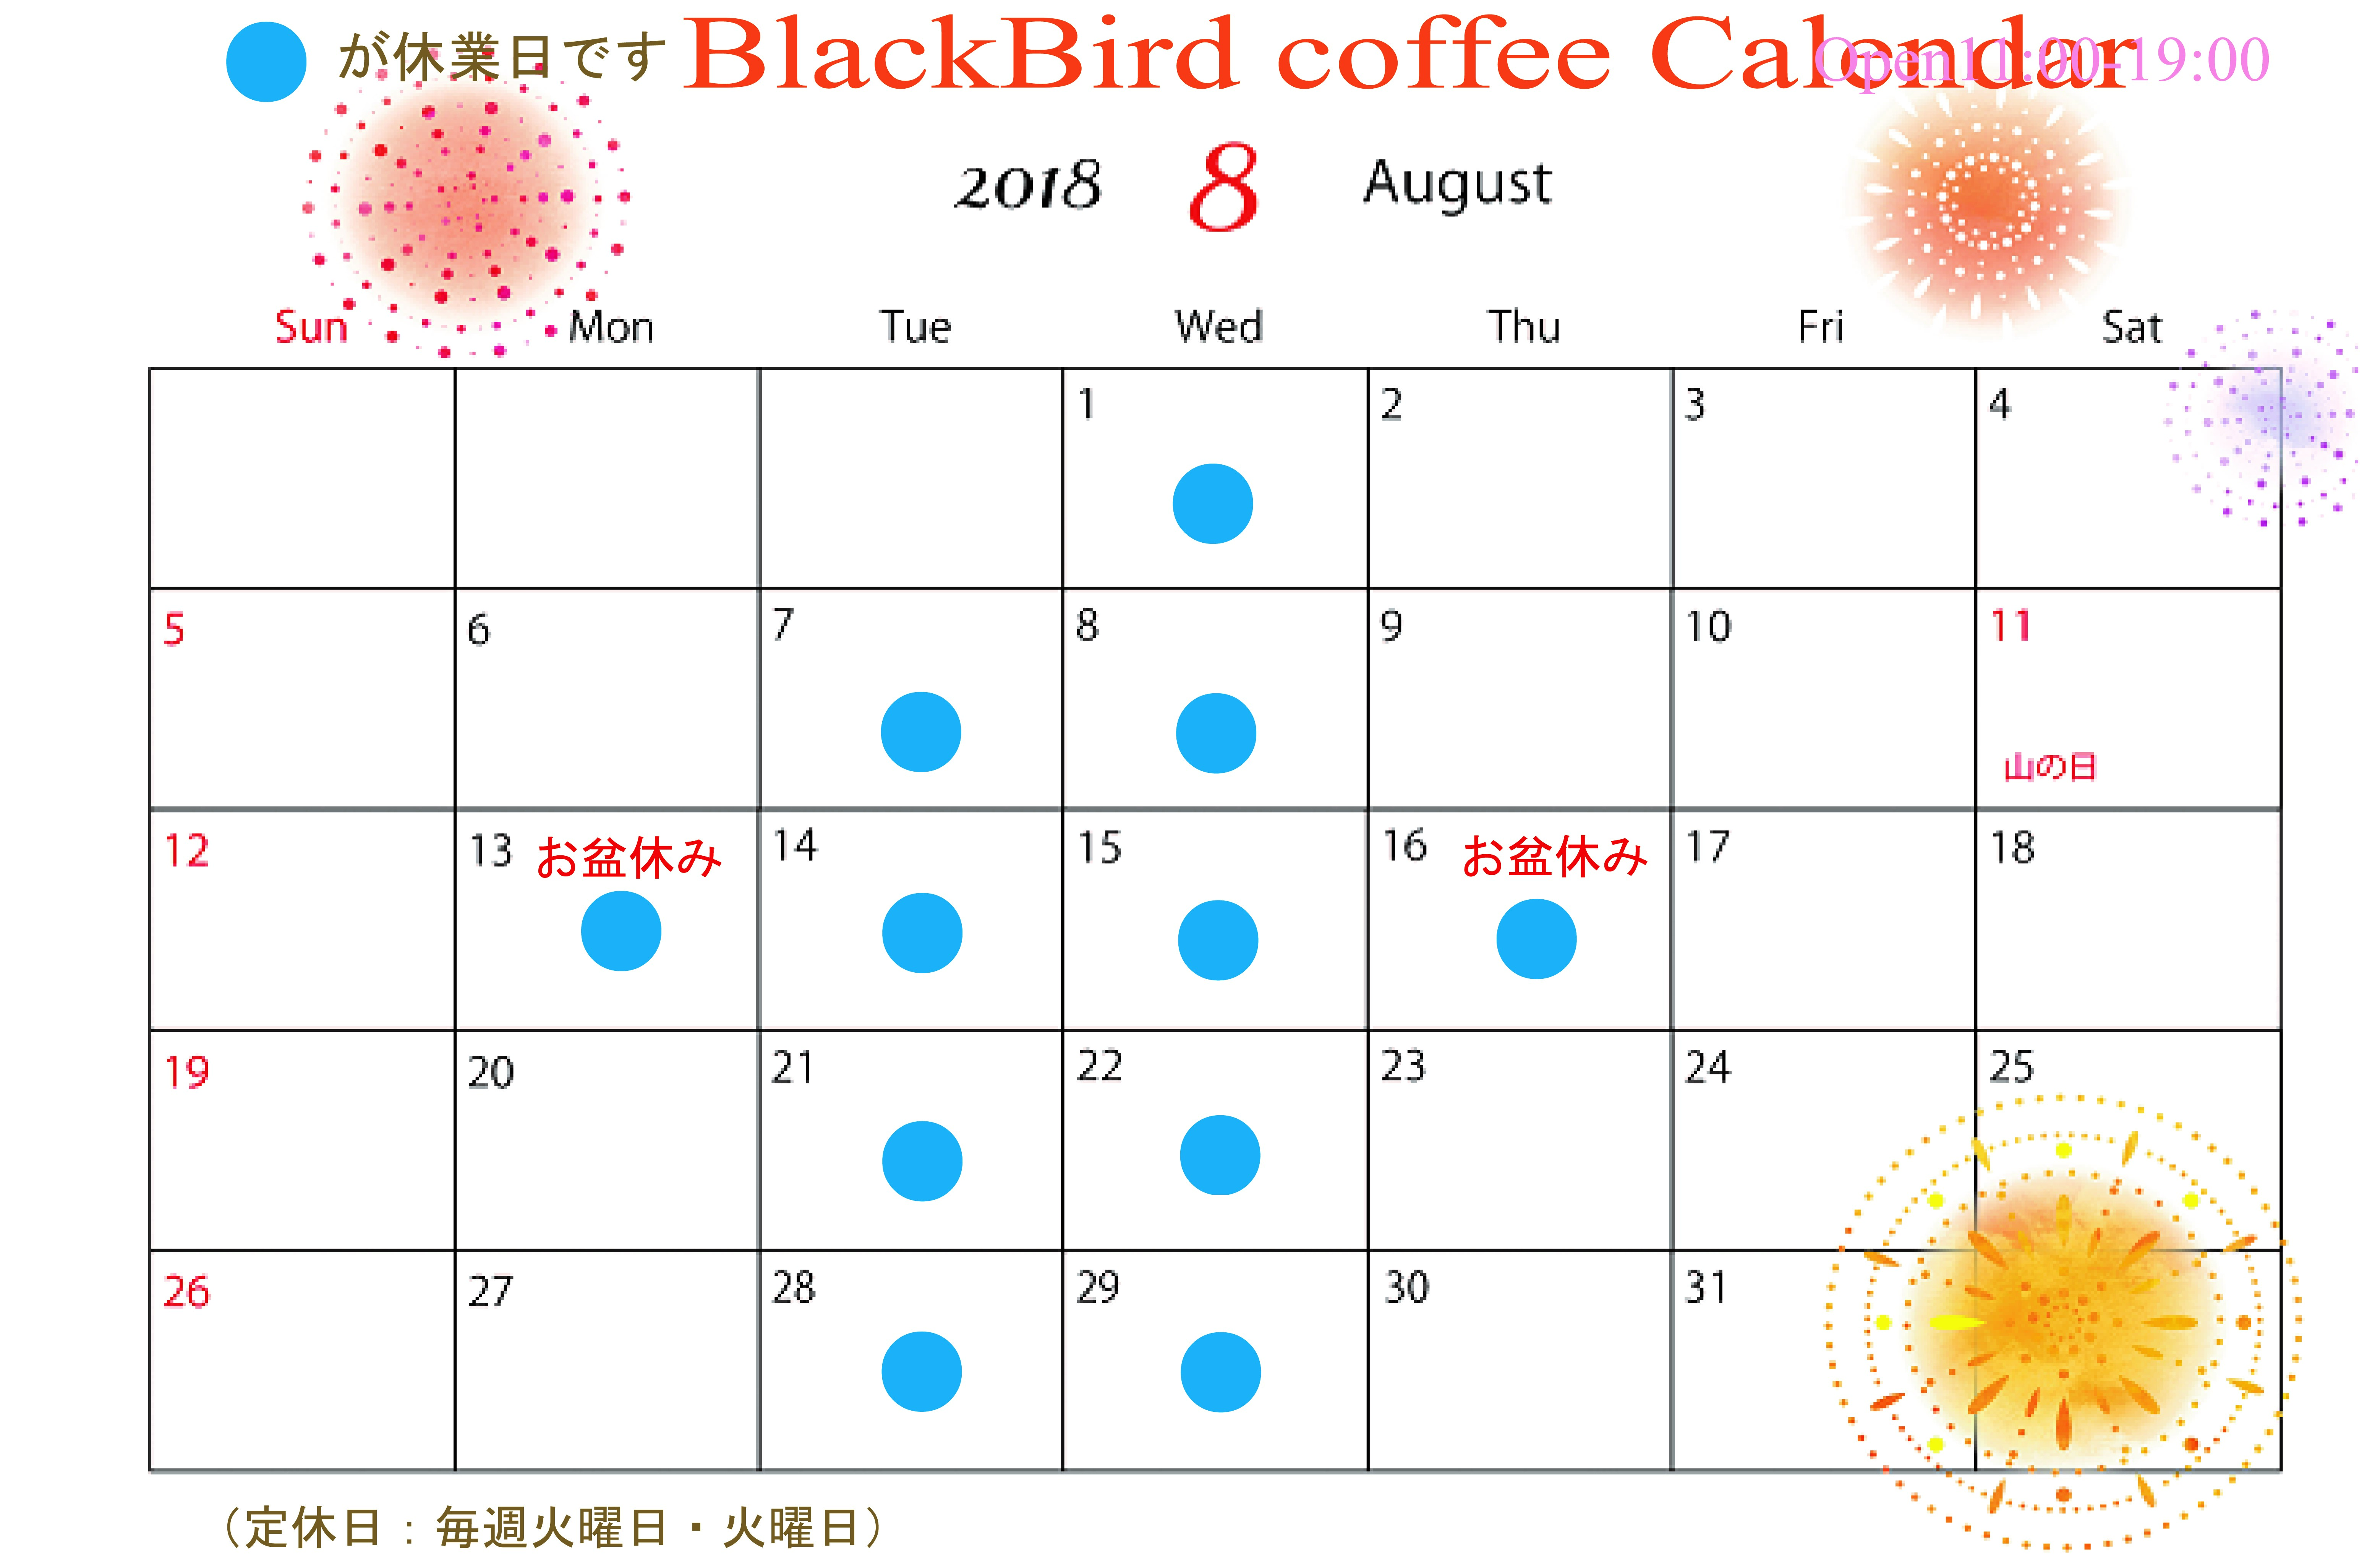 7月 18 Blackbird Coffee